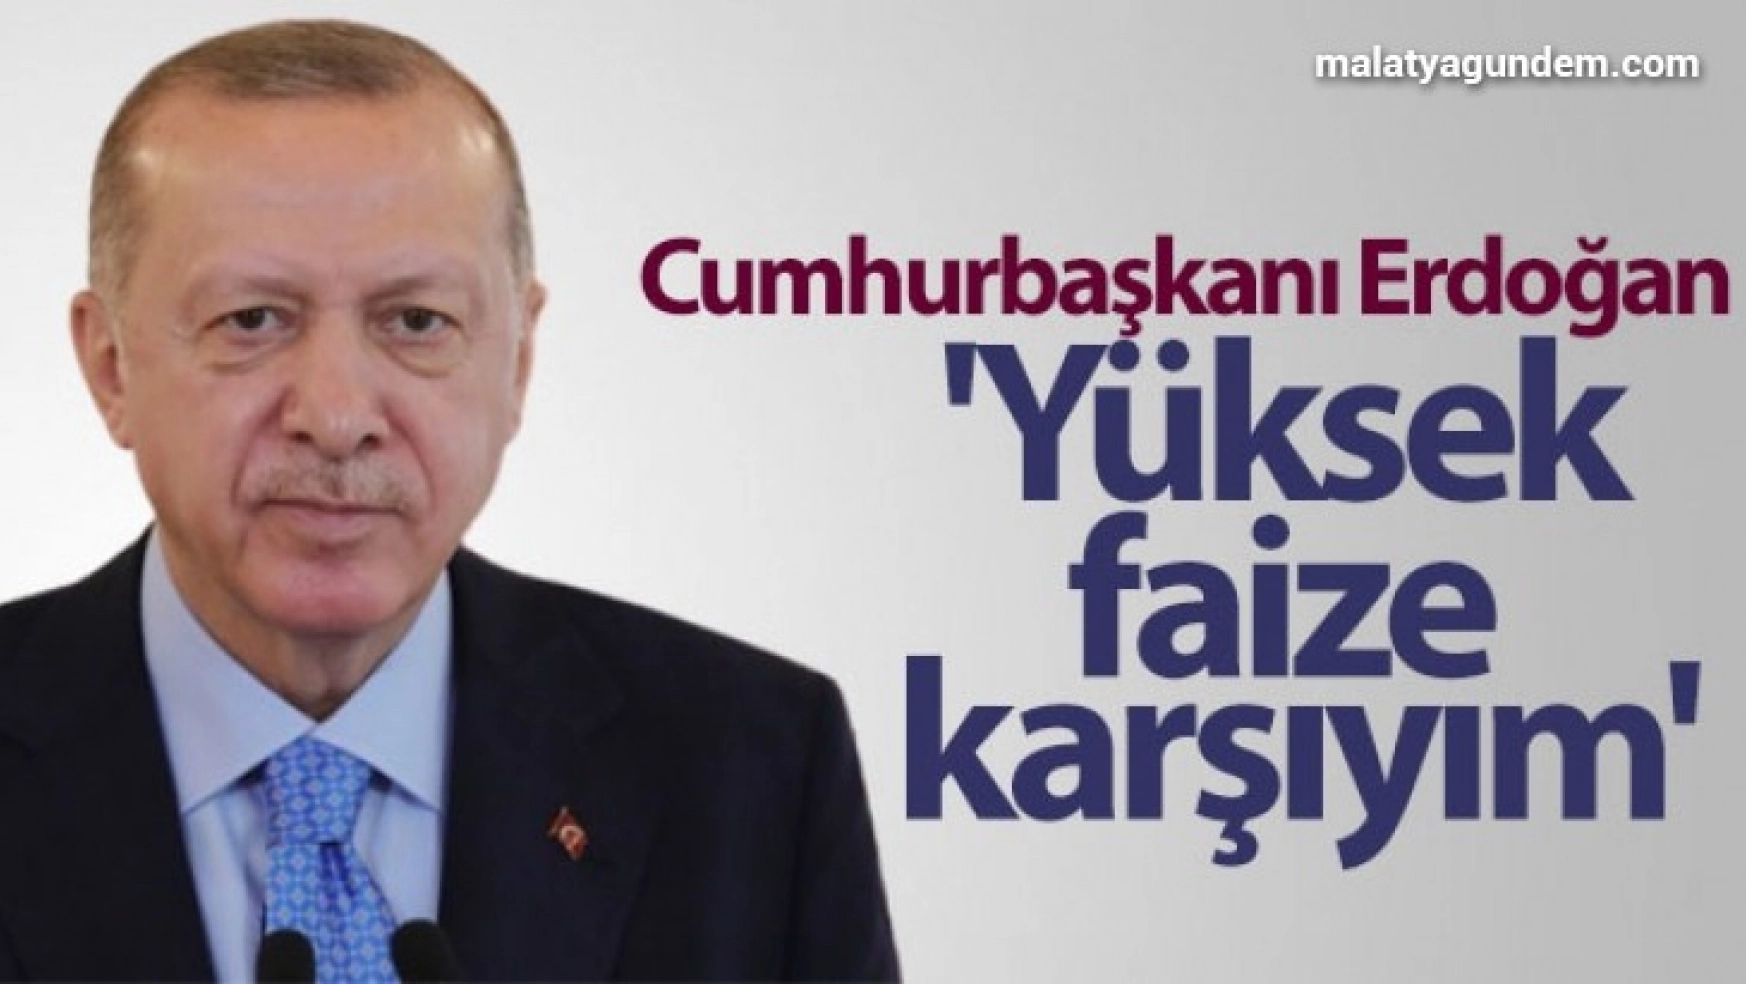 Cumhurbaşkanı Erdoğan: 'Yüksek faize karşıyım'